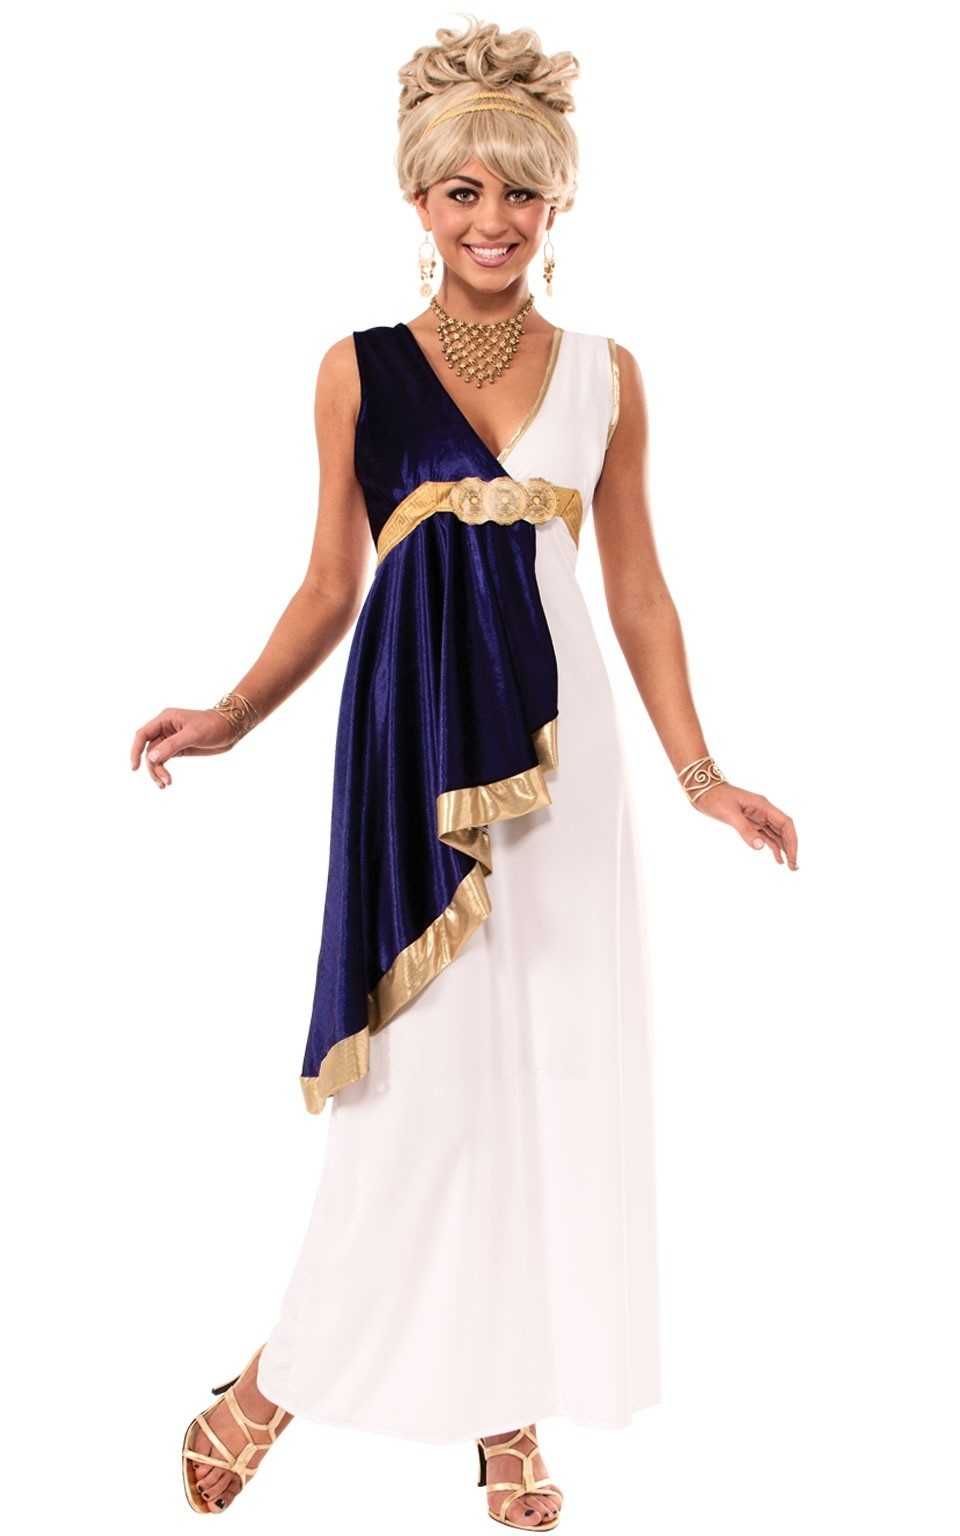 Вечерние платья в греческом стиле: разновидности и подходящие аксессуары